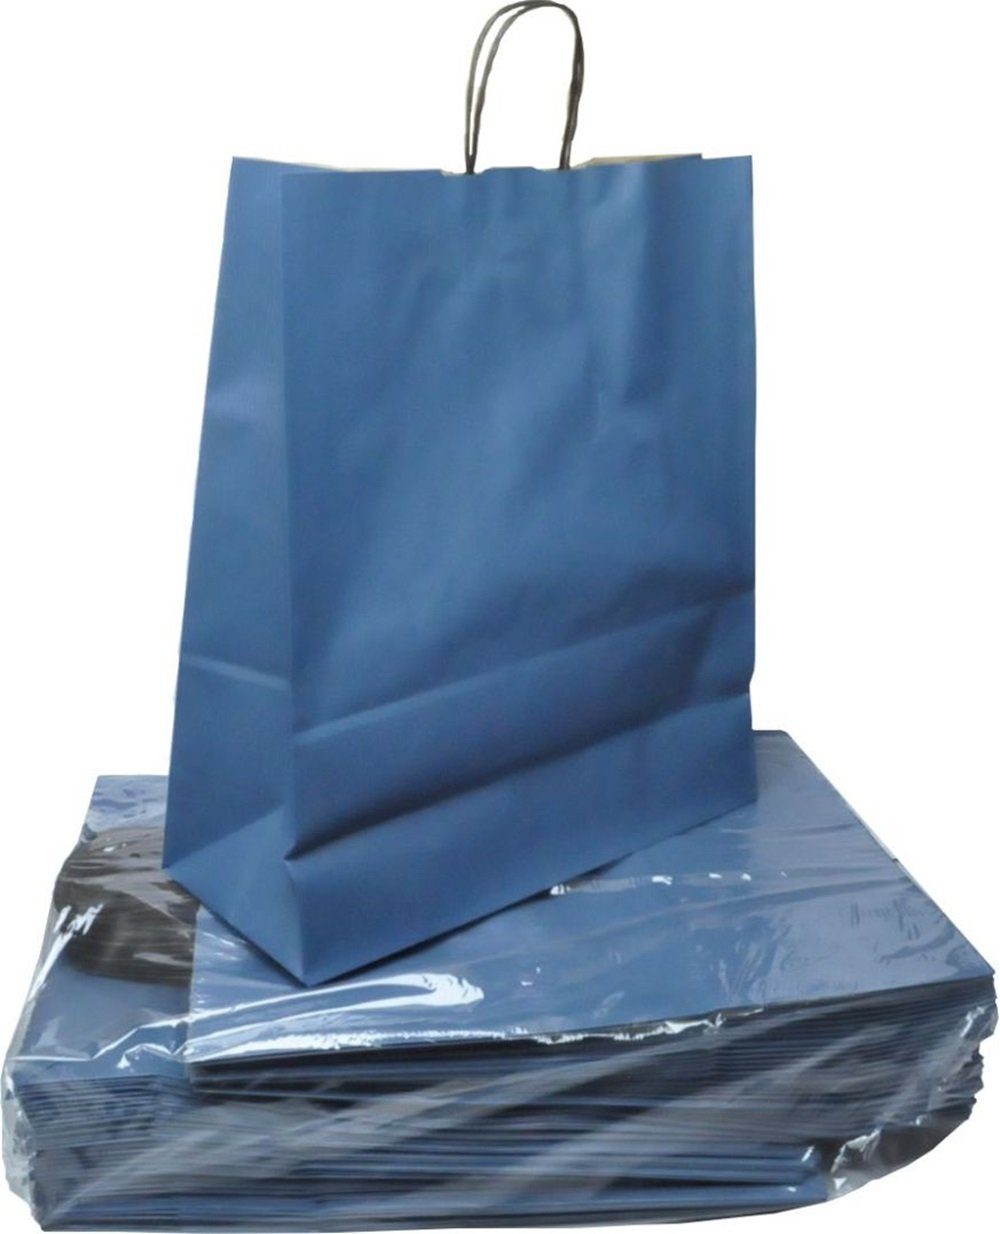 VP Einkaufsbeutel 50 Papiertaschen VP toptwist® 32x14x42cm - blau | Einkaufsshopper